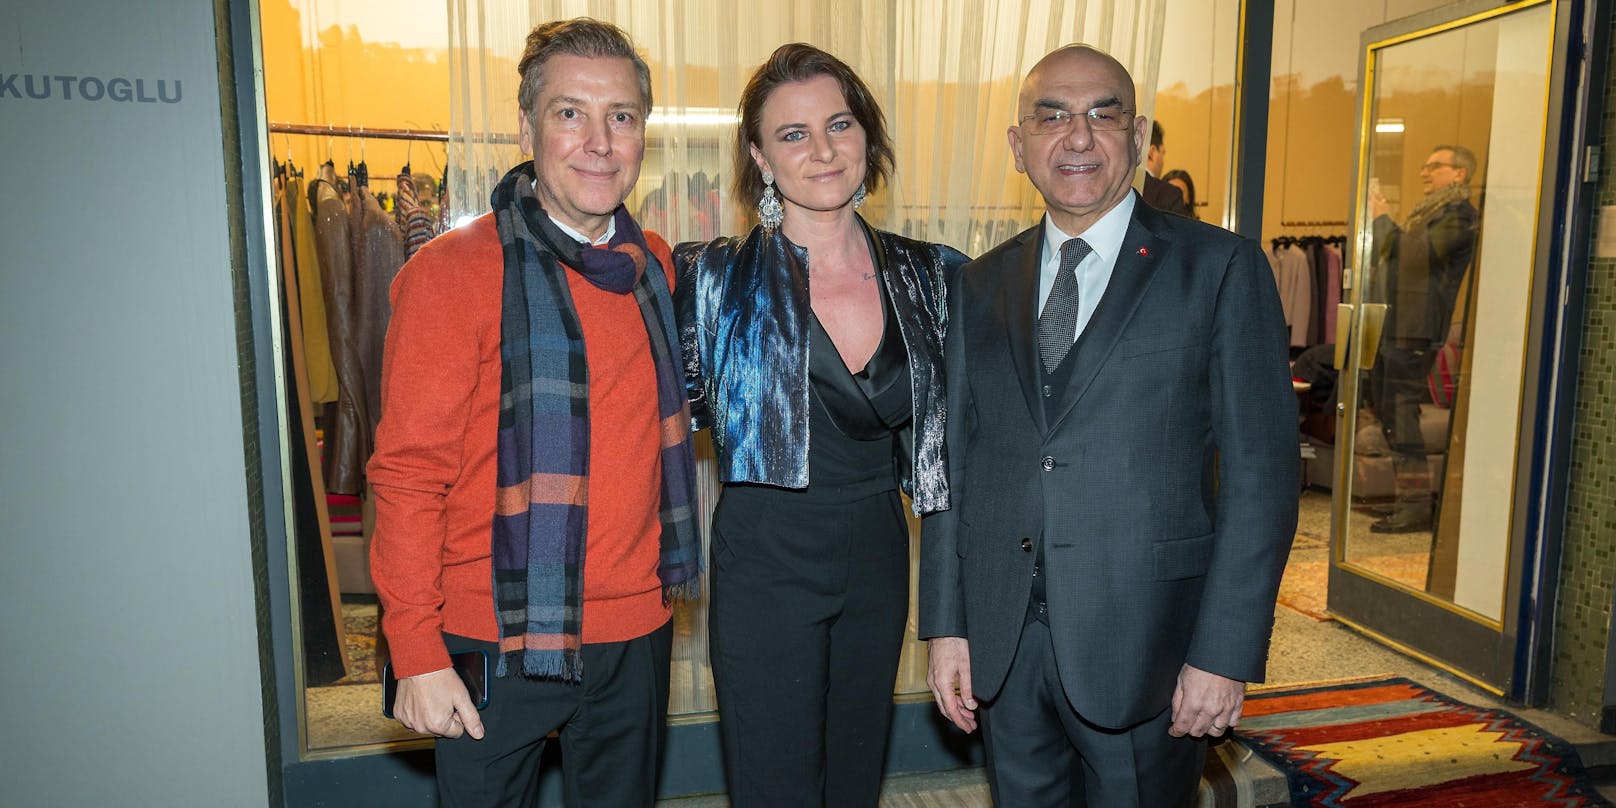 Katharina Nehammer beim Charity Empfang von Atil Kutoglu und dem türkischen Botschafter Ozan Ceyhun.